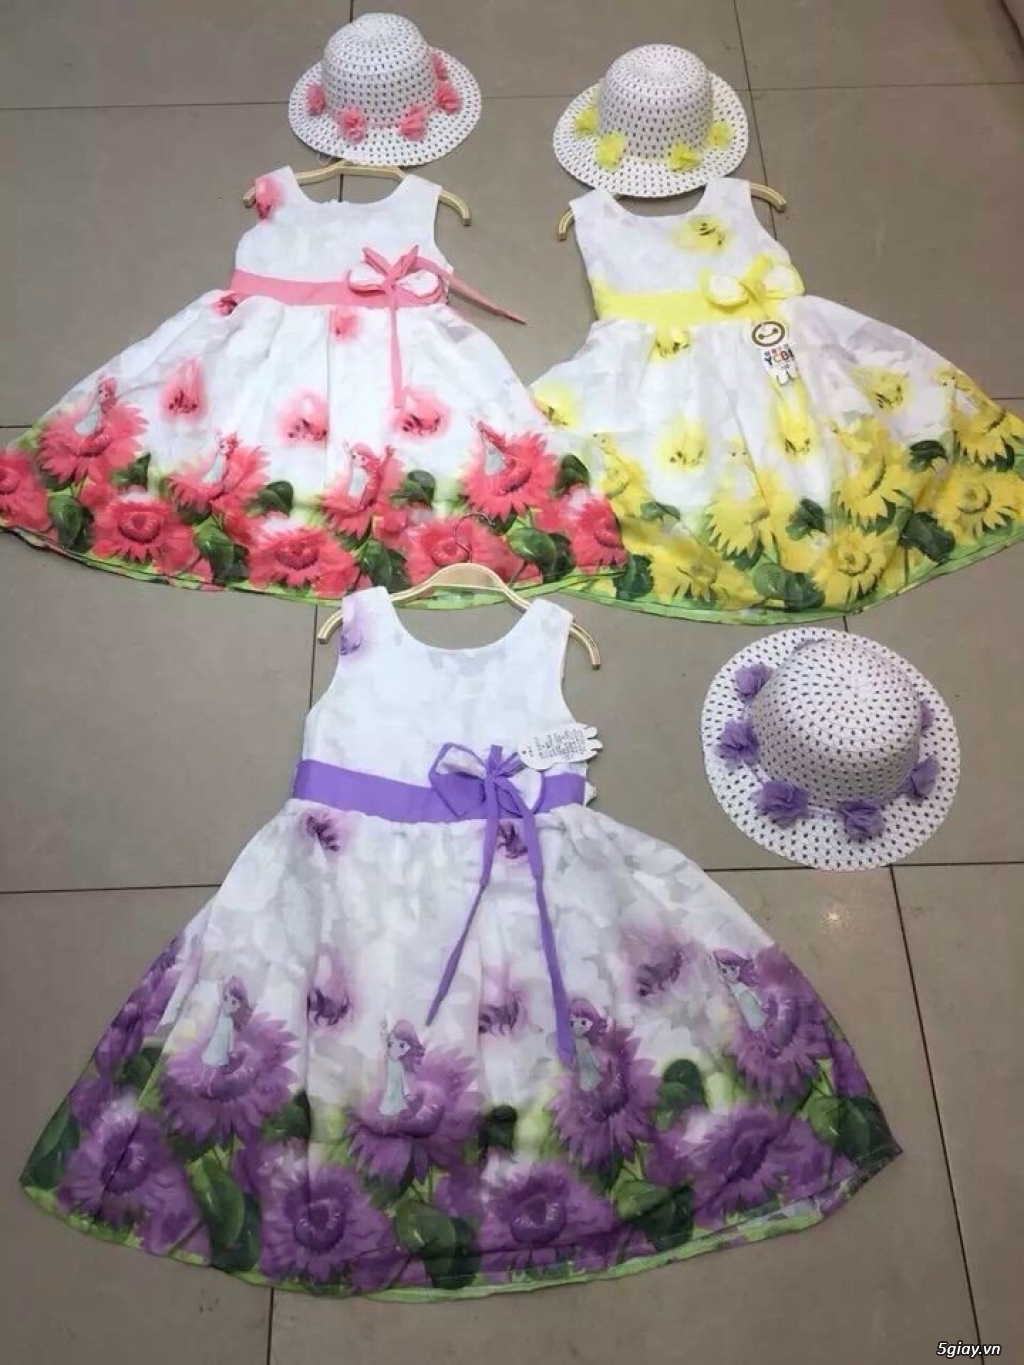 Chuyen sỉ quần áo trẻ em Quảng Châu - Minh Phuong - 3